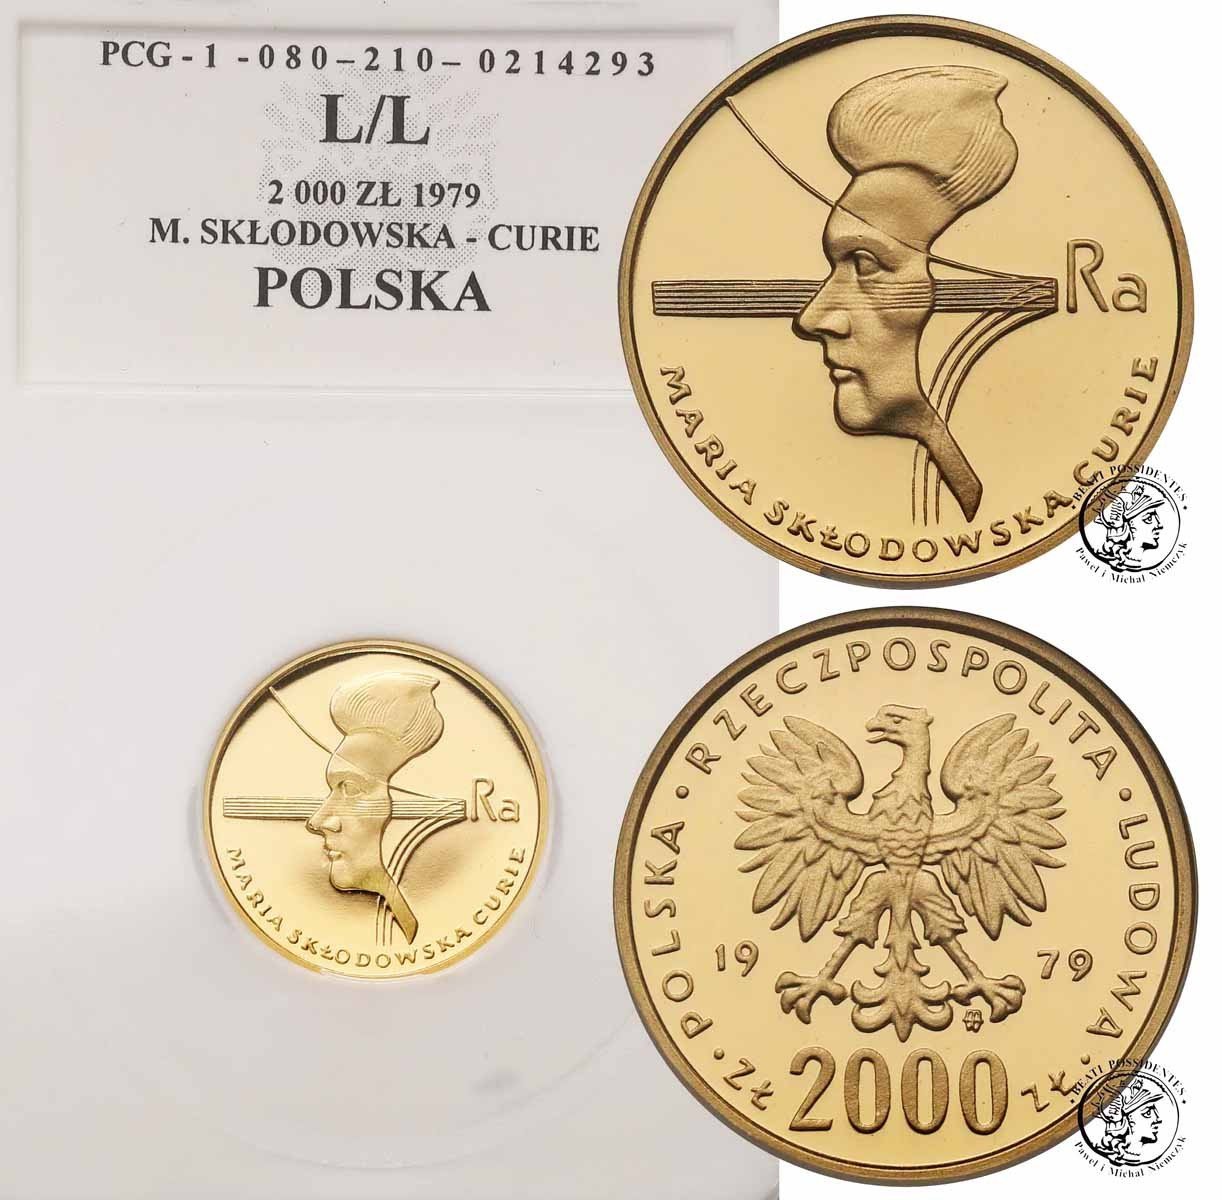 Polska PRL 2000 złotych 1979 Skłodowska L/L